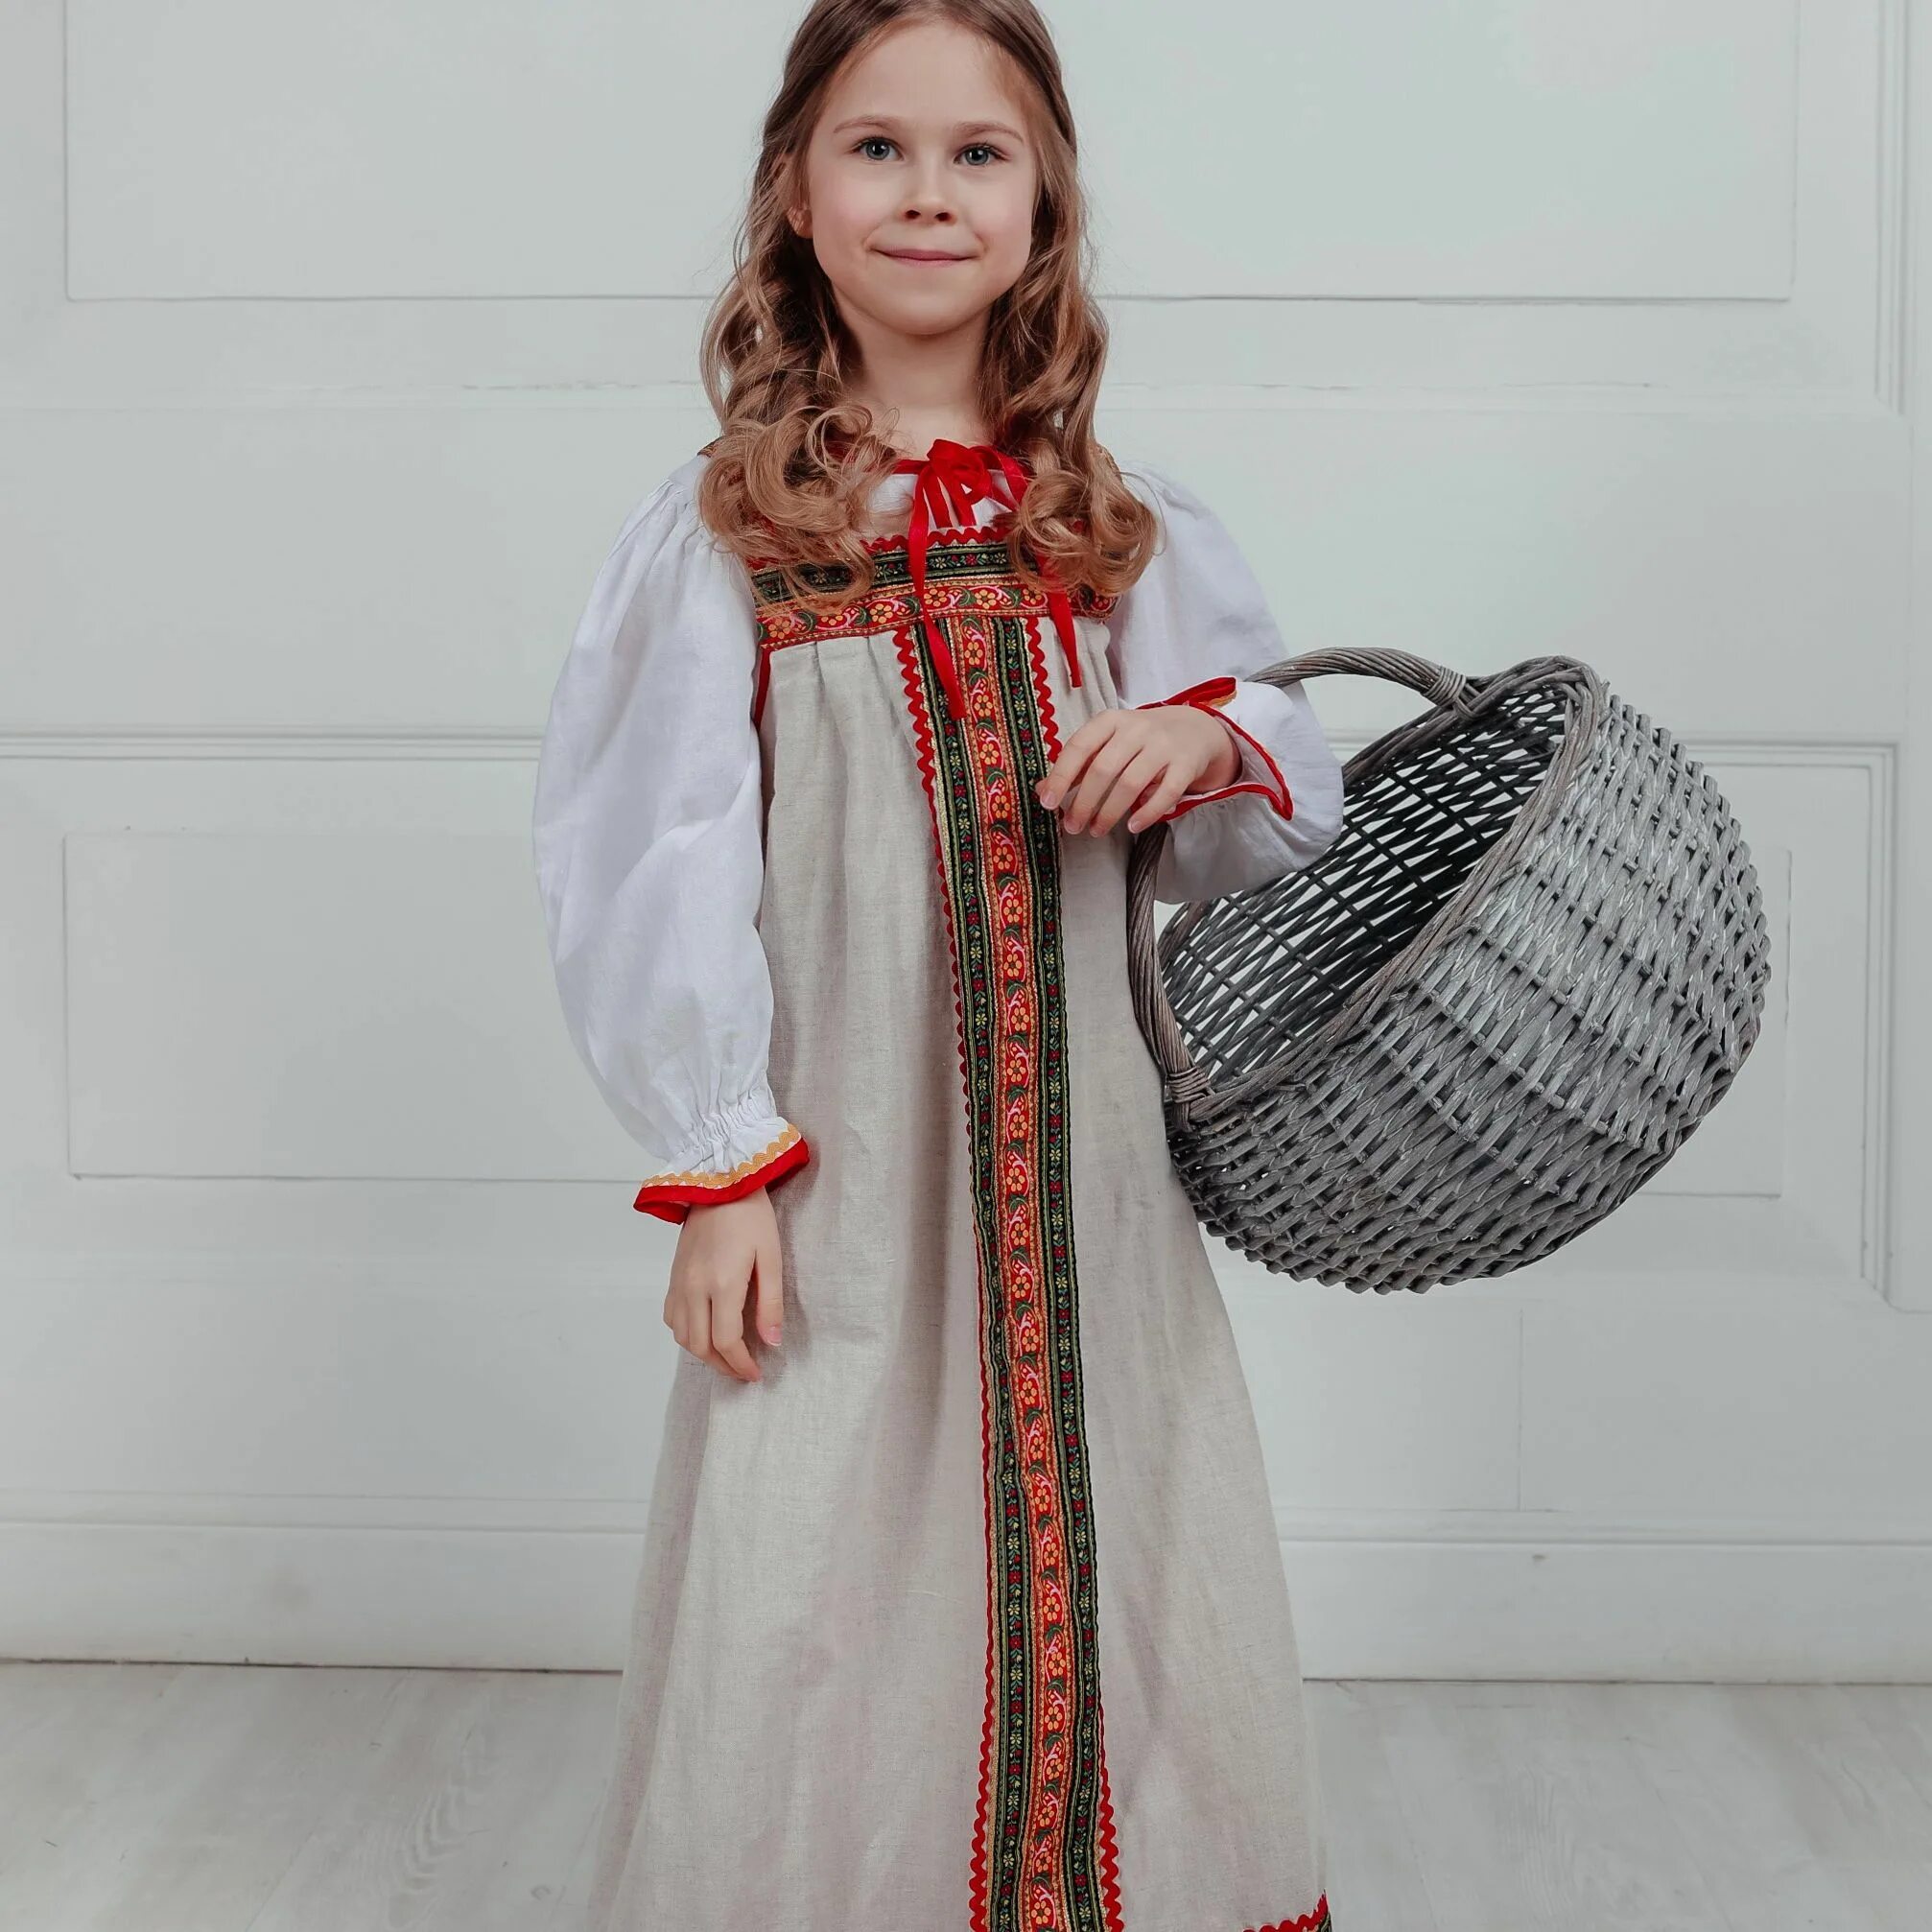 Русский костюм для девочки. Детский народный костюм. Русские народные костюмы для детей. Фольклорные костюмы для детей. Сарафан в народном стиле для девочки.